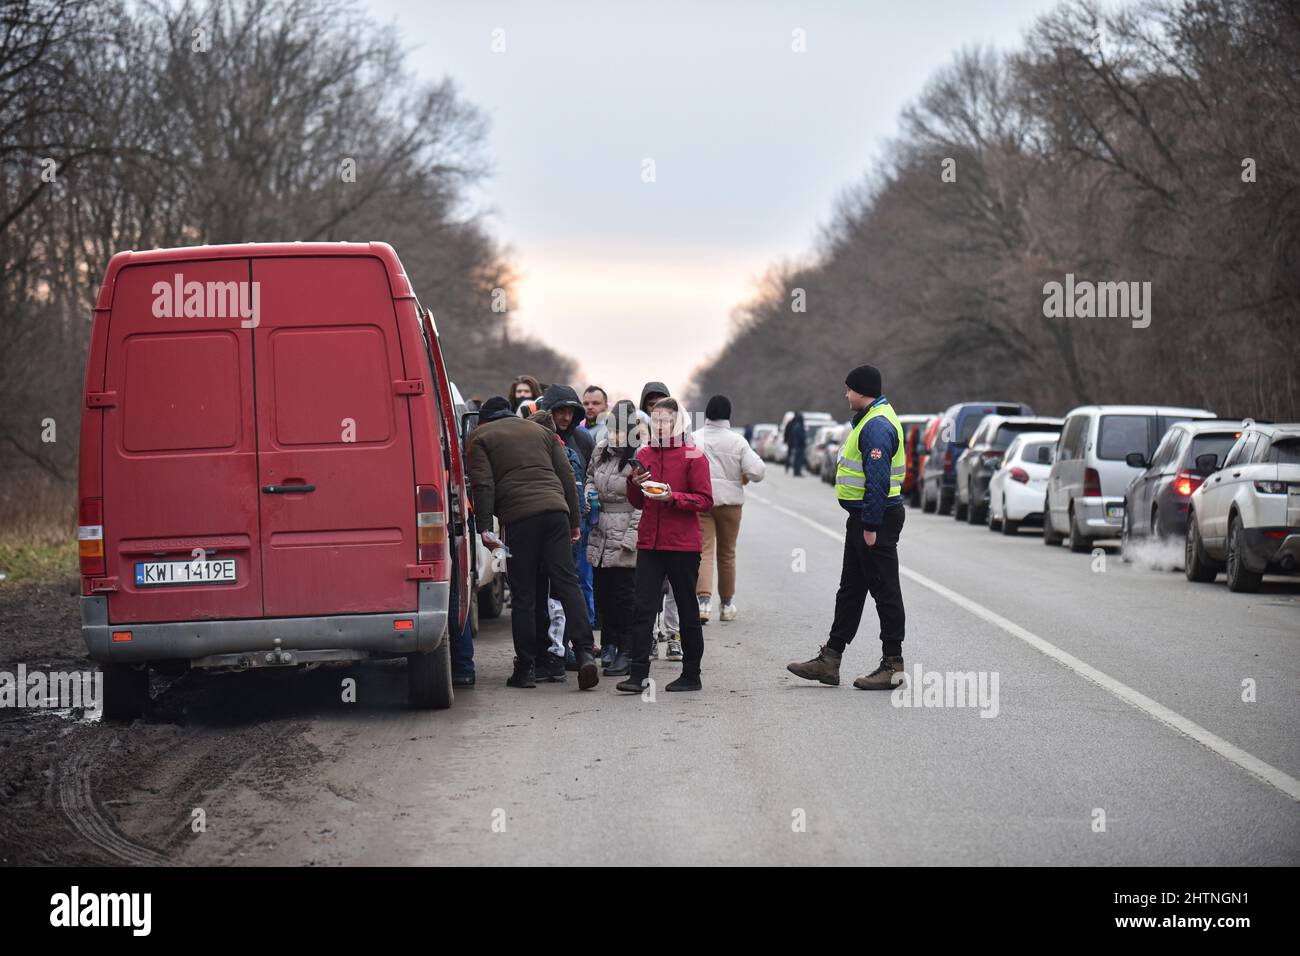 Des volontaires distribuent de la nourriture aux réfugiés qui attendent de traverser la frontière entre l'Ukraine et la Pologne au point de contrôle de Shehyni en raison d'une agression russe. Des milliers de personnes sont devenues des réfugiés forcés en raison de la guerre de la Russie en Ukraine. De nombreux réfugiés se dirigent vers la frontière ukrainienne-polonaise. Ainsi, la file d'attente de voitures jusqu'au point de contrôle de Shehyni s'étendait sur près de 20 kilomètres. Certaines personnes y attendent depuis cinq jours pour traverser la frontière. Quiconque veut traverser la frontière à pied est obligé de couvrir ces près de 20 kilomètres à pied. Banque D'Images